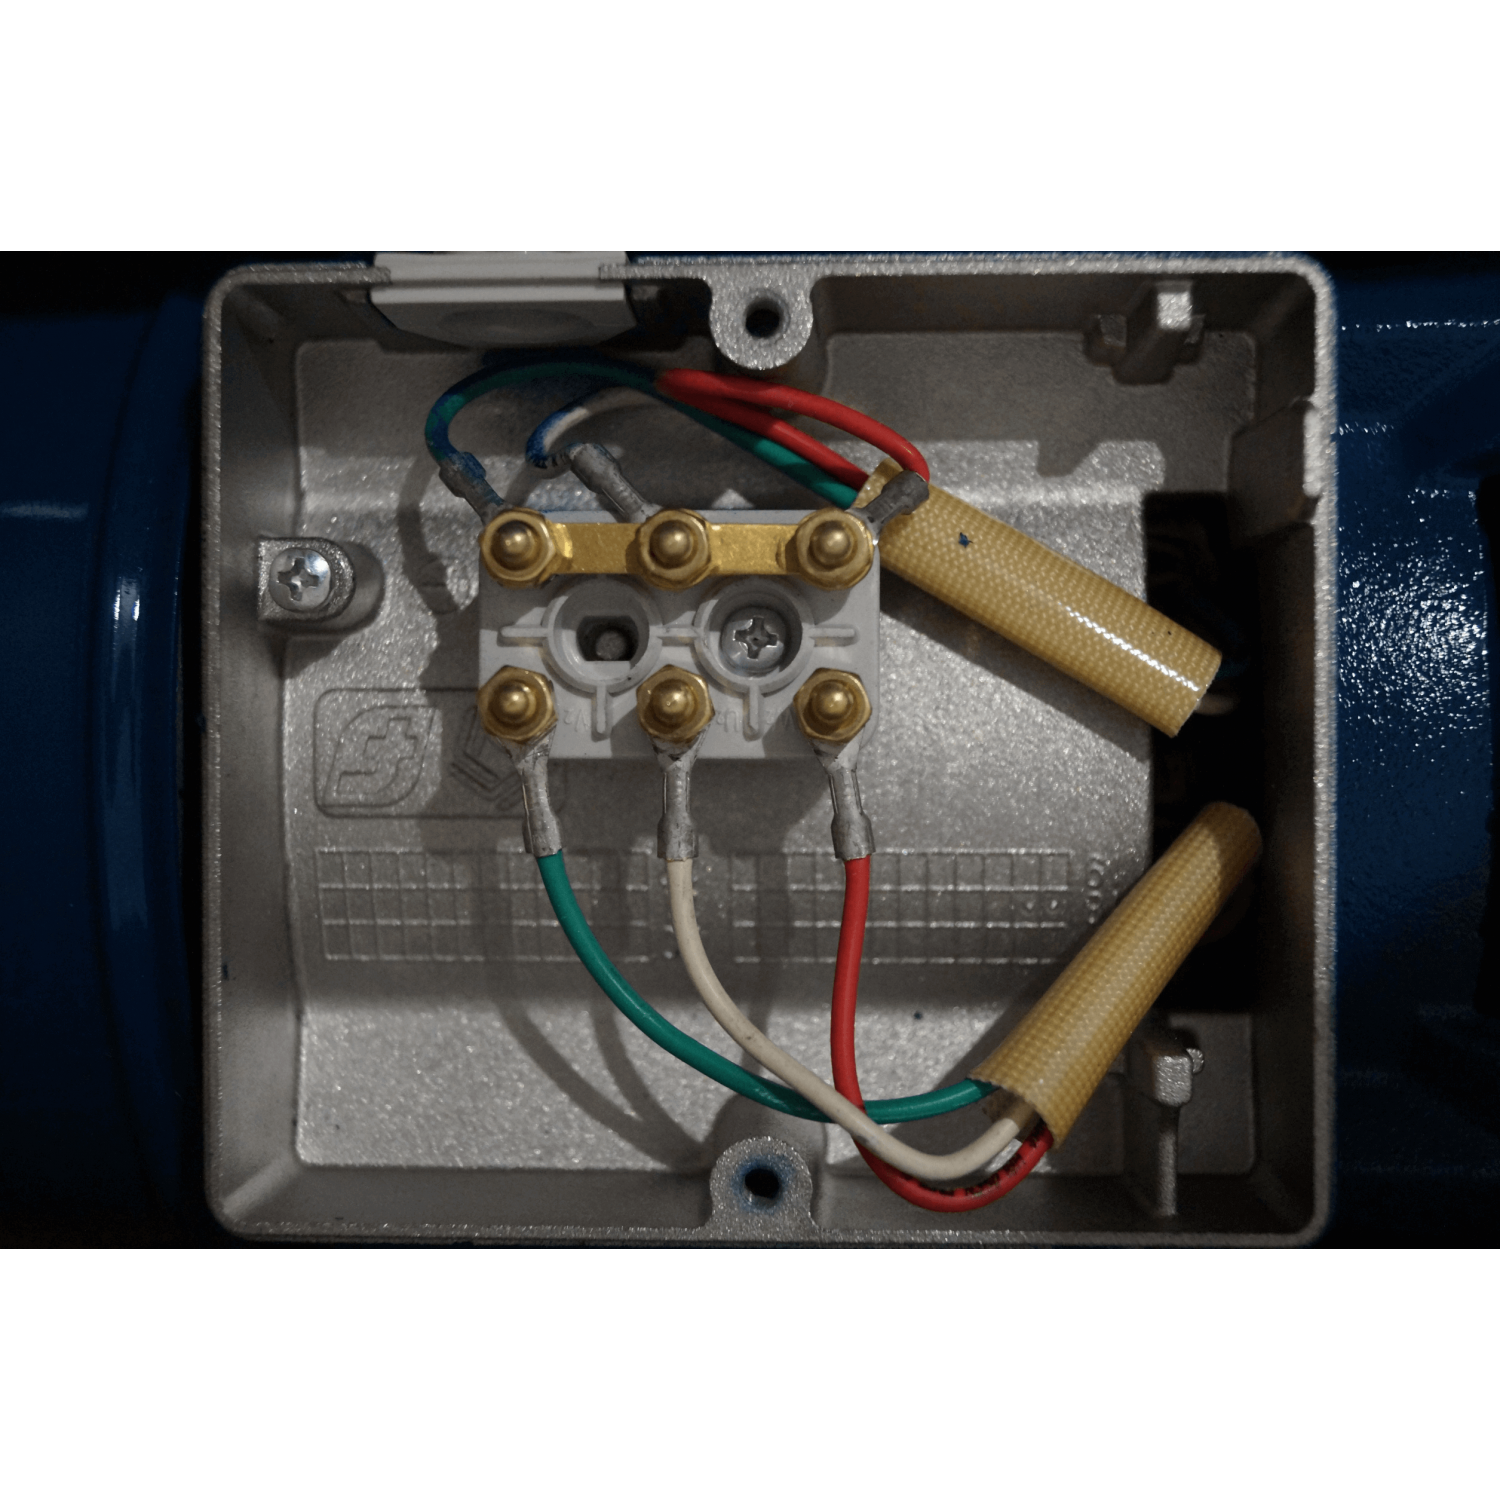 Pompe serie JET 380V 0.75kW / 1cv avec disjoncteur magnéto thermique + kit aspiration 8m